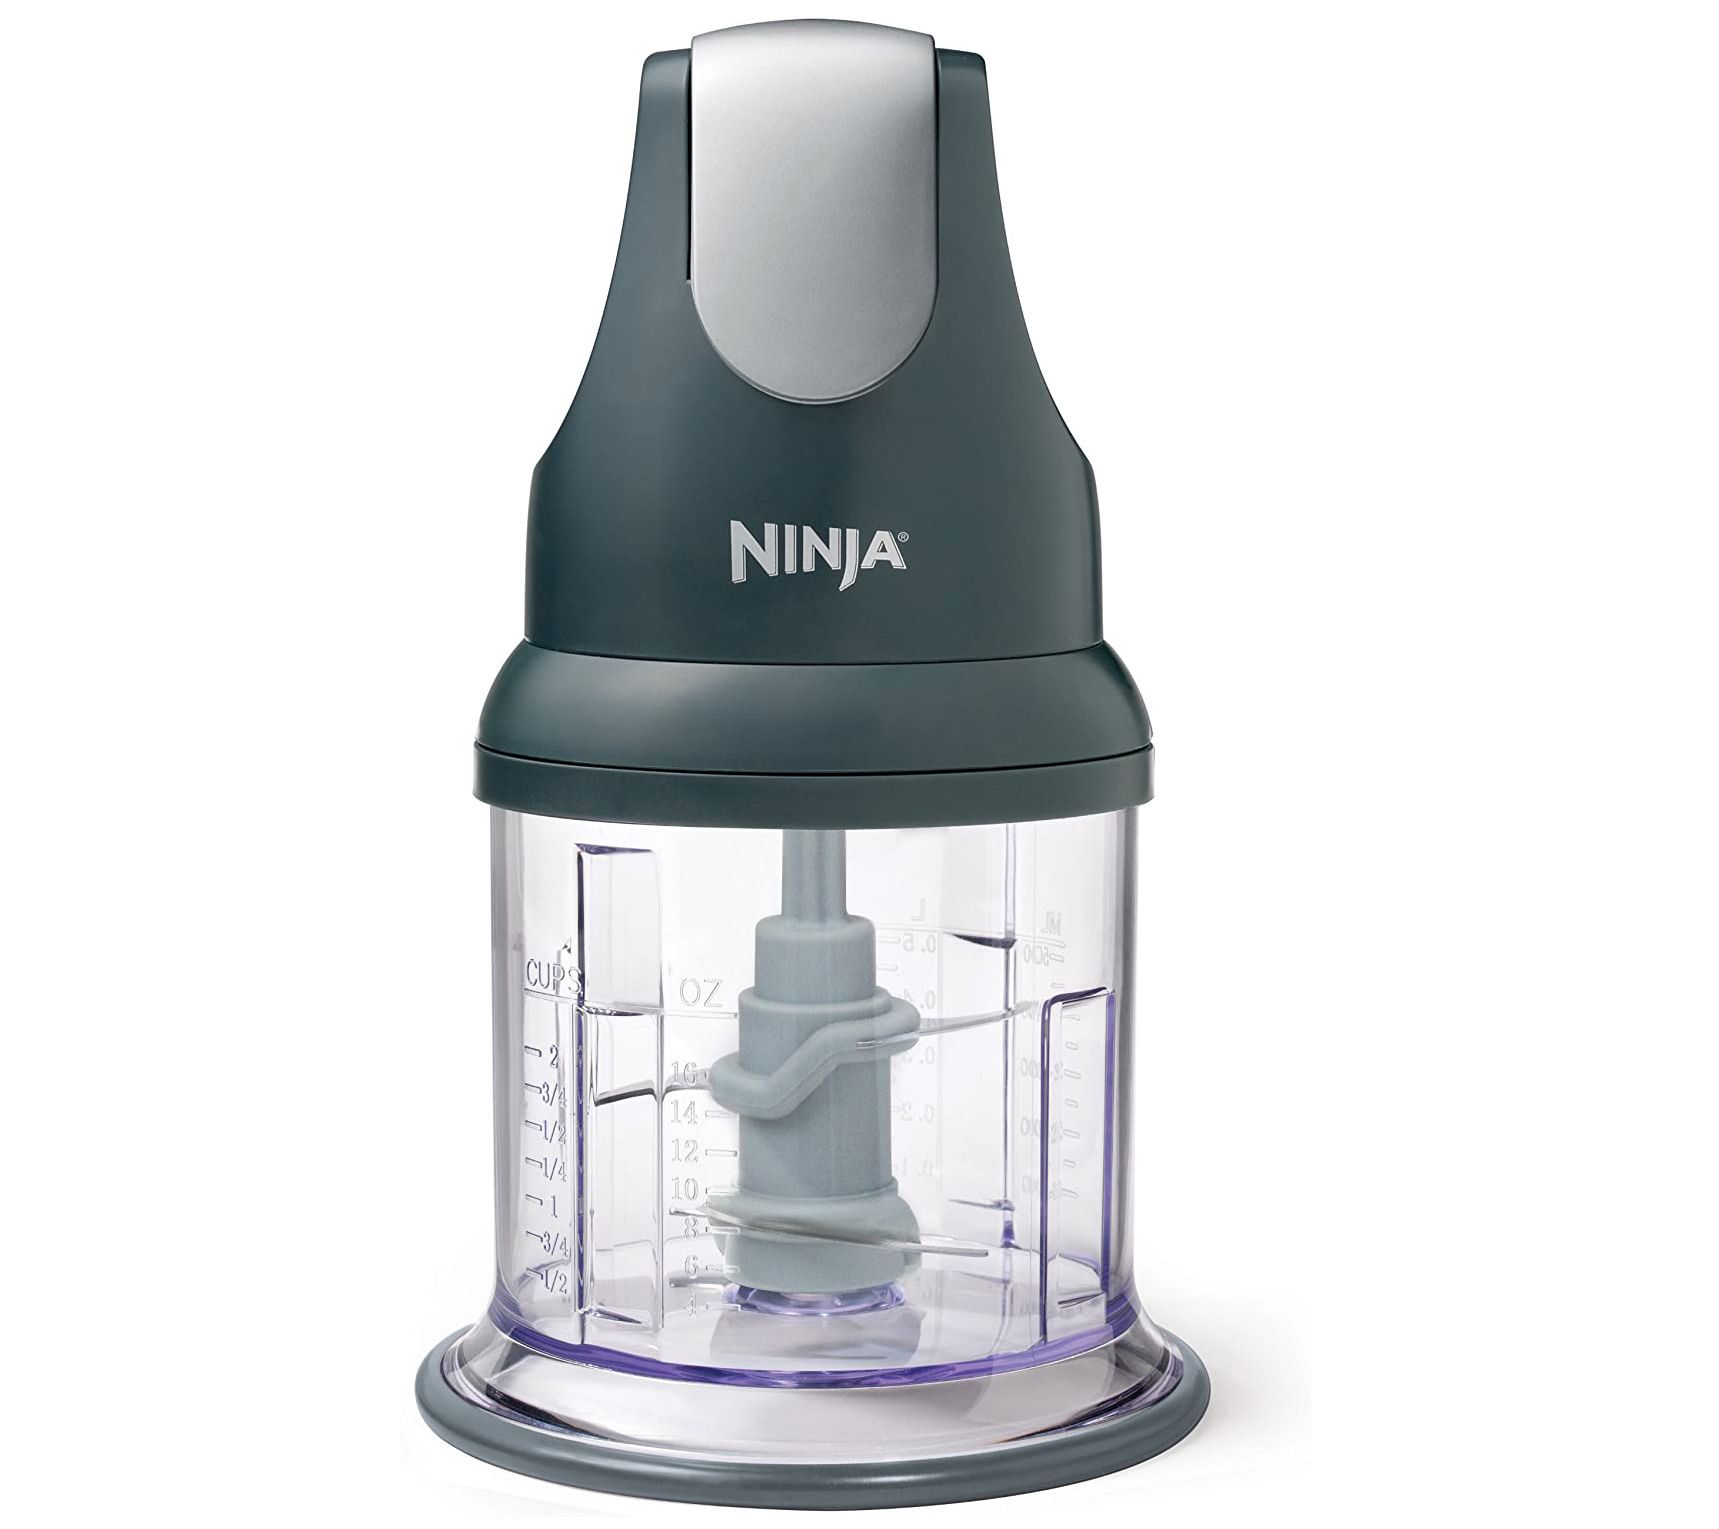 Ninja Professional XL Food Processor 4.5-Cup Ne sting Bowl 